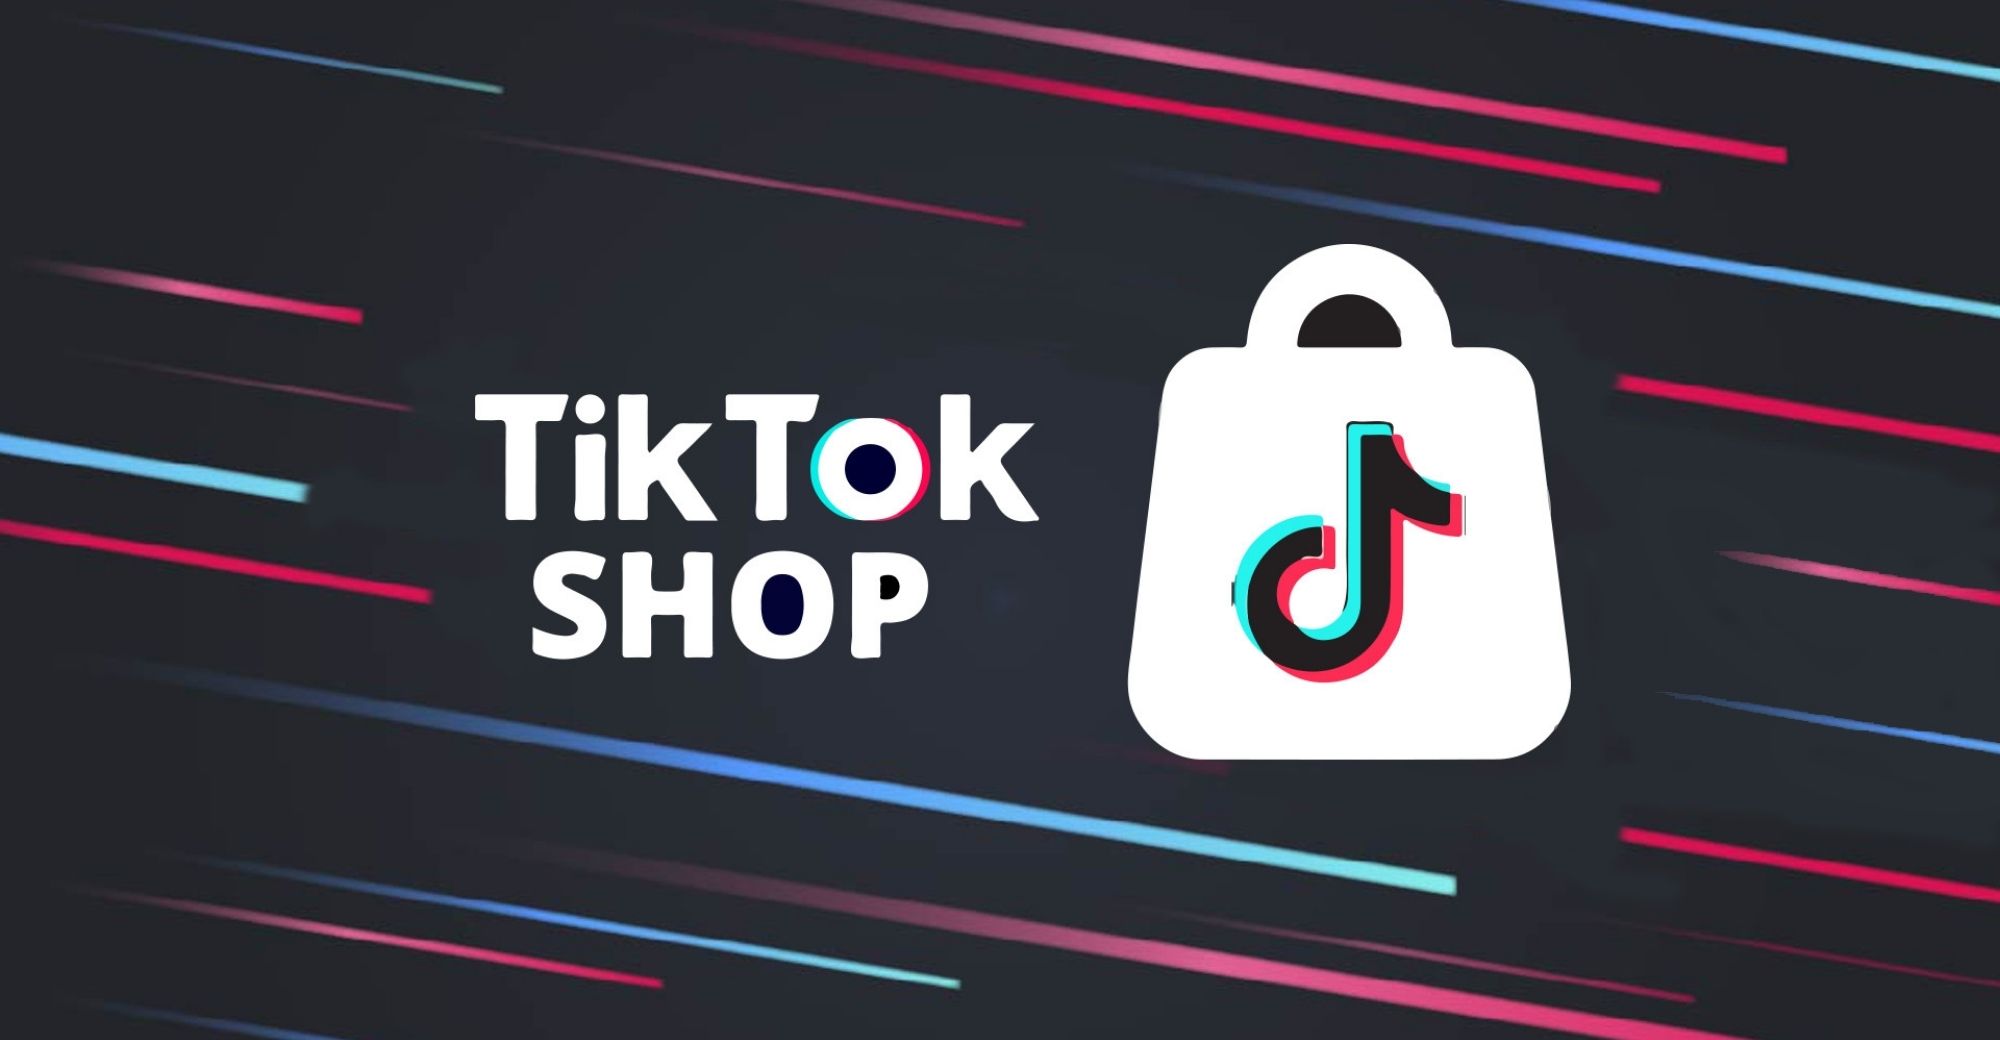 Hướng dẫn đăng ký TikTok Shop nhanh gọn chỉ với 3 bước!